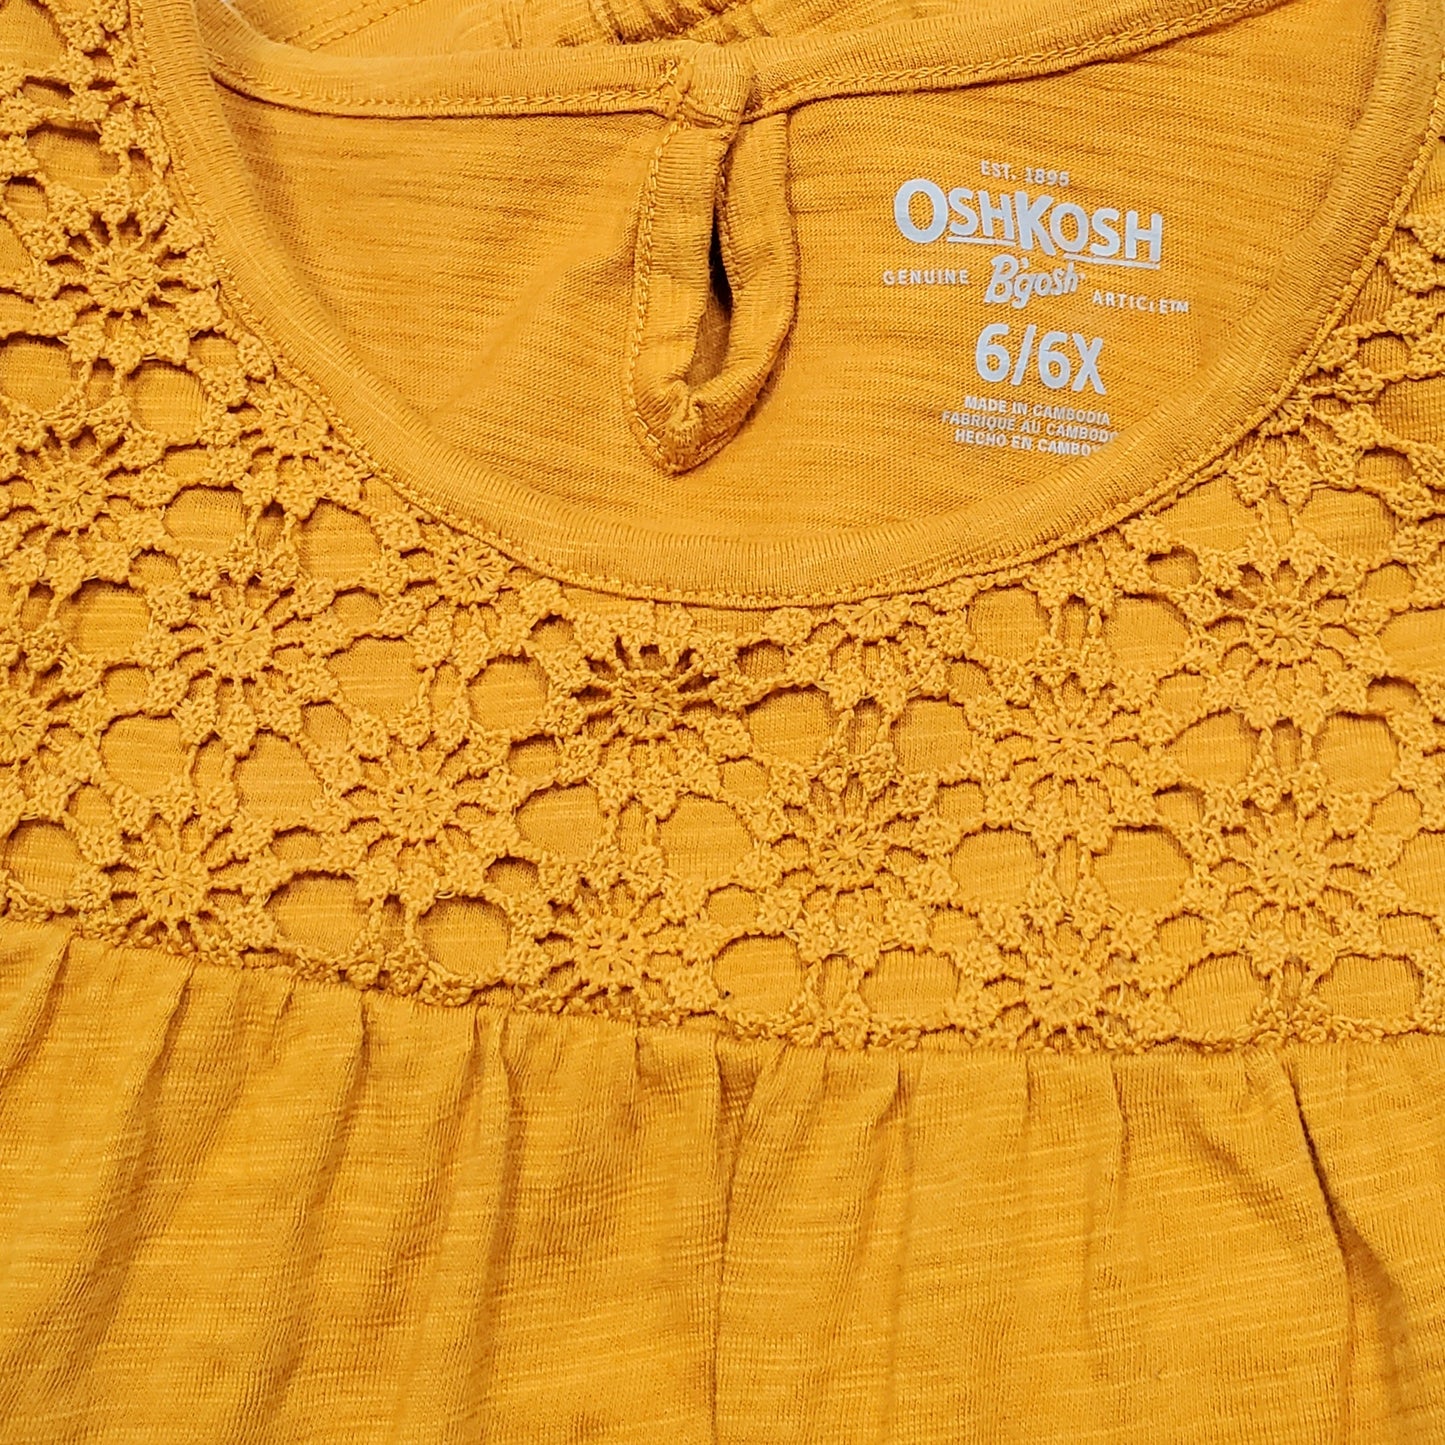 Oshkosh Girls Mustard Yellow Lace Top 6/6X Used View 4